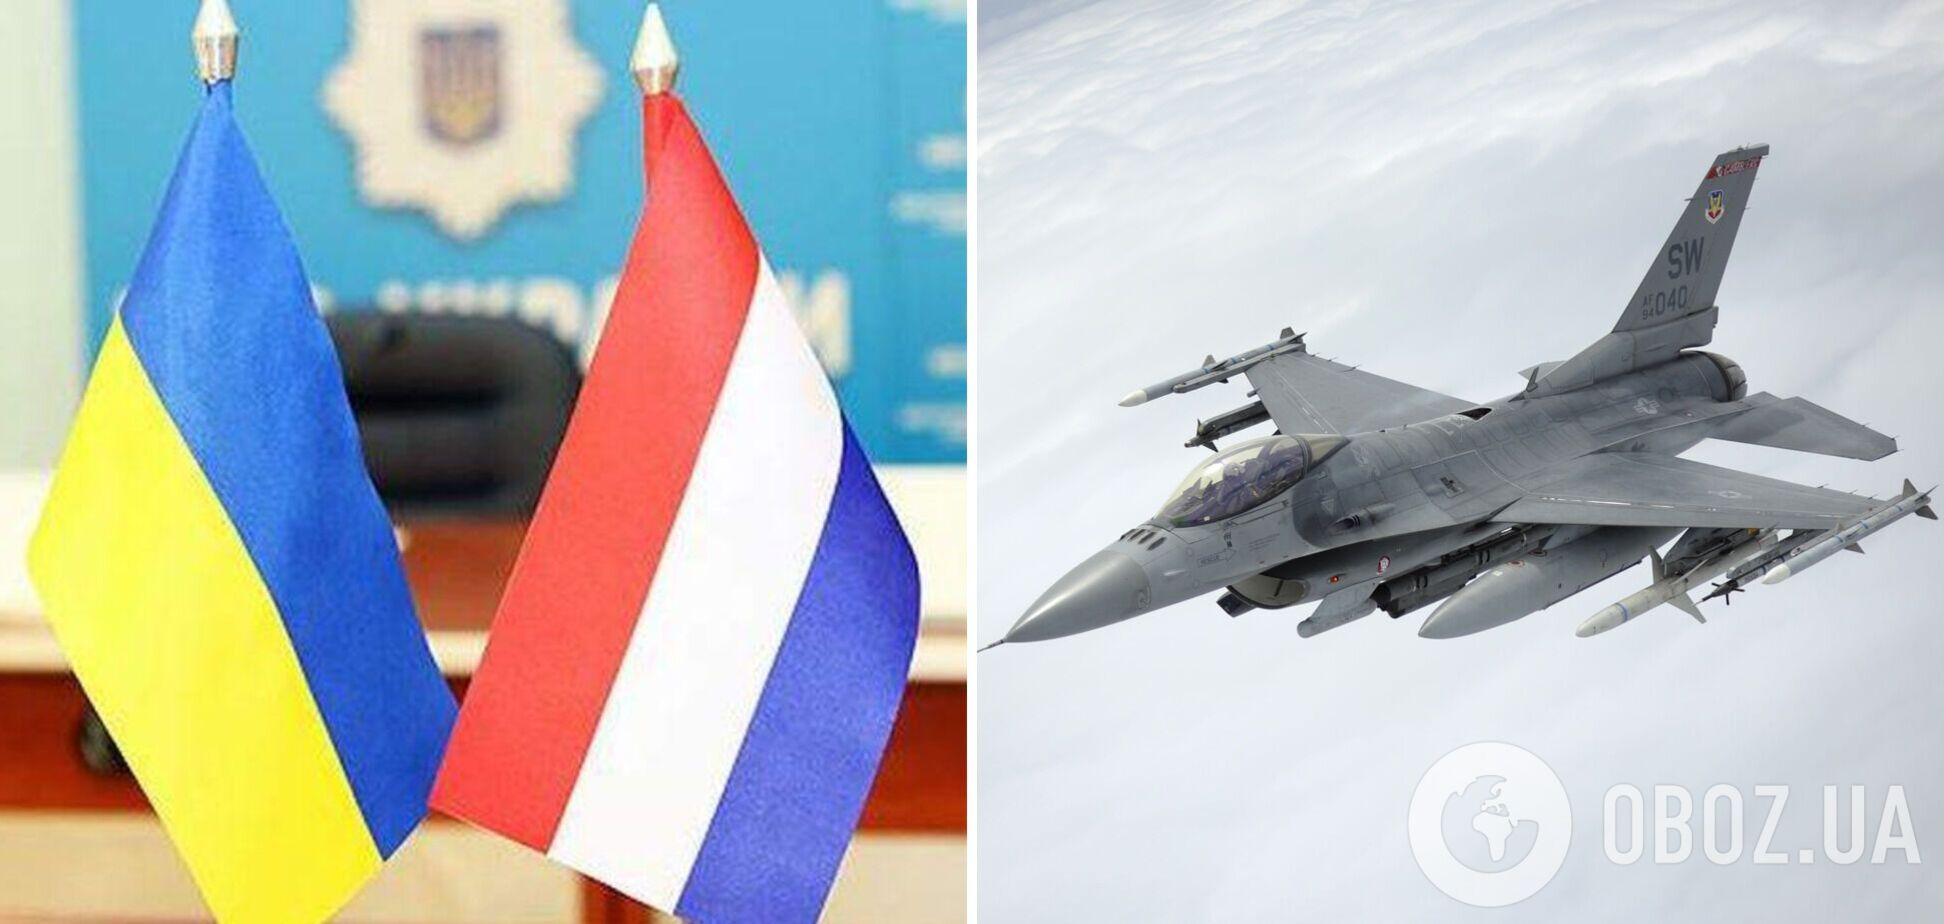 Нидерланды передадут Украине все свои F-16, кроме учебных: стало известно, когда это произойдет